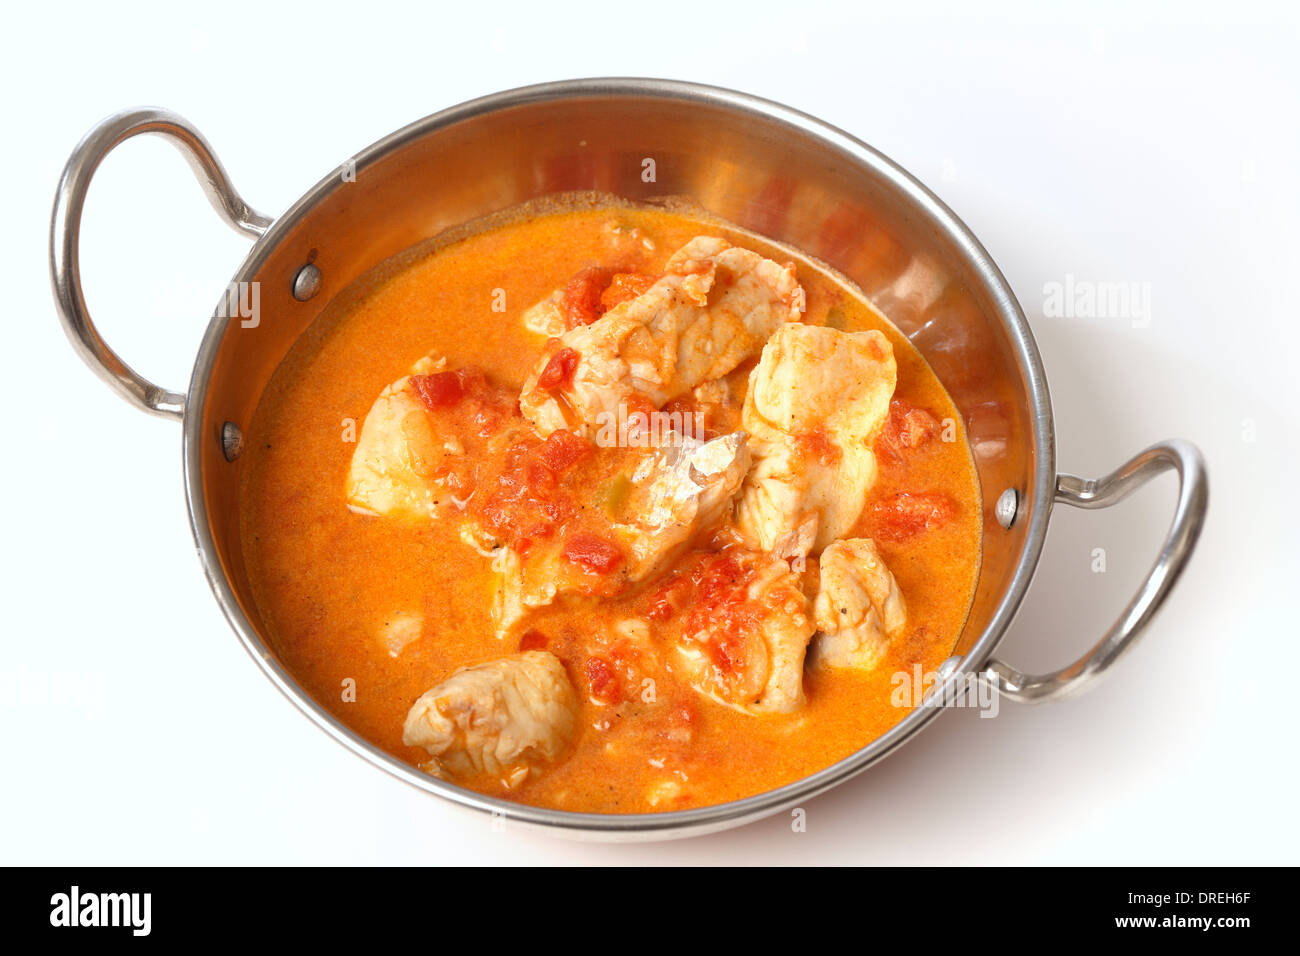 Curry de poisson de base, dans une sauce tomate et sauce au lait de coco, dans un wok ou karahi kadai (bol) Banque D'Images